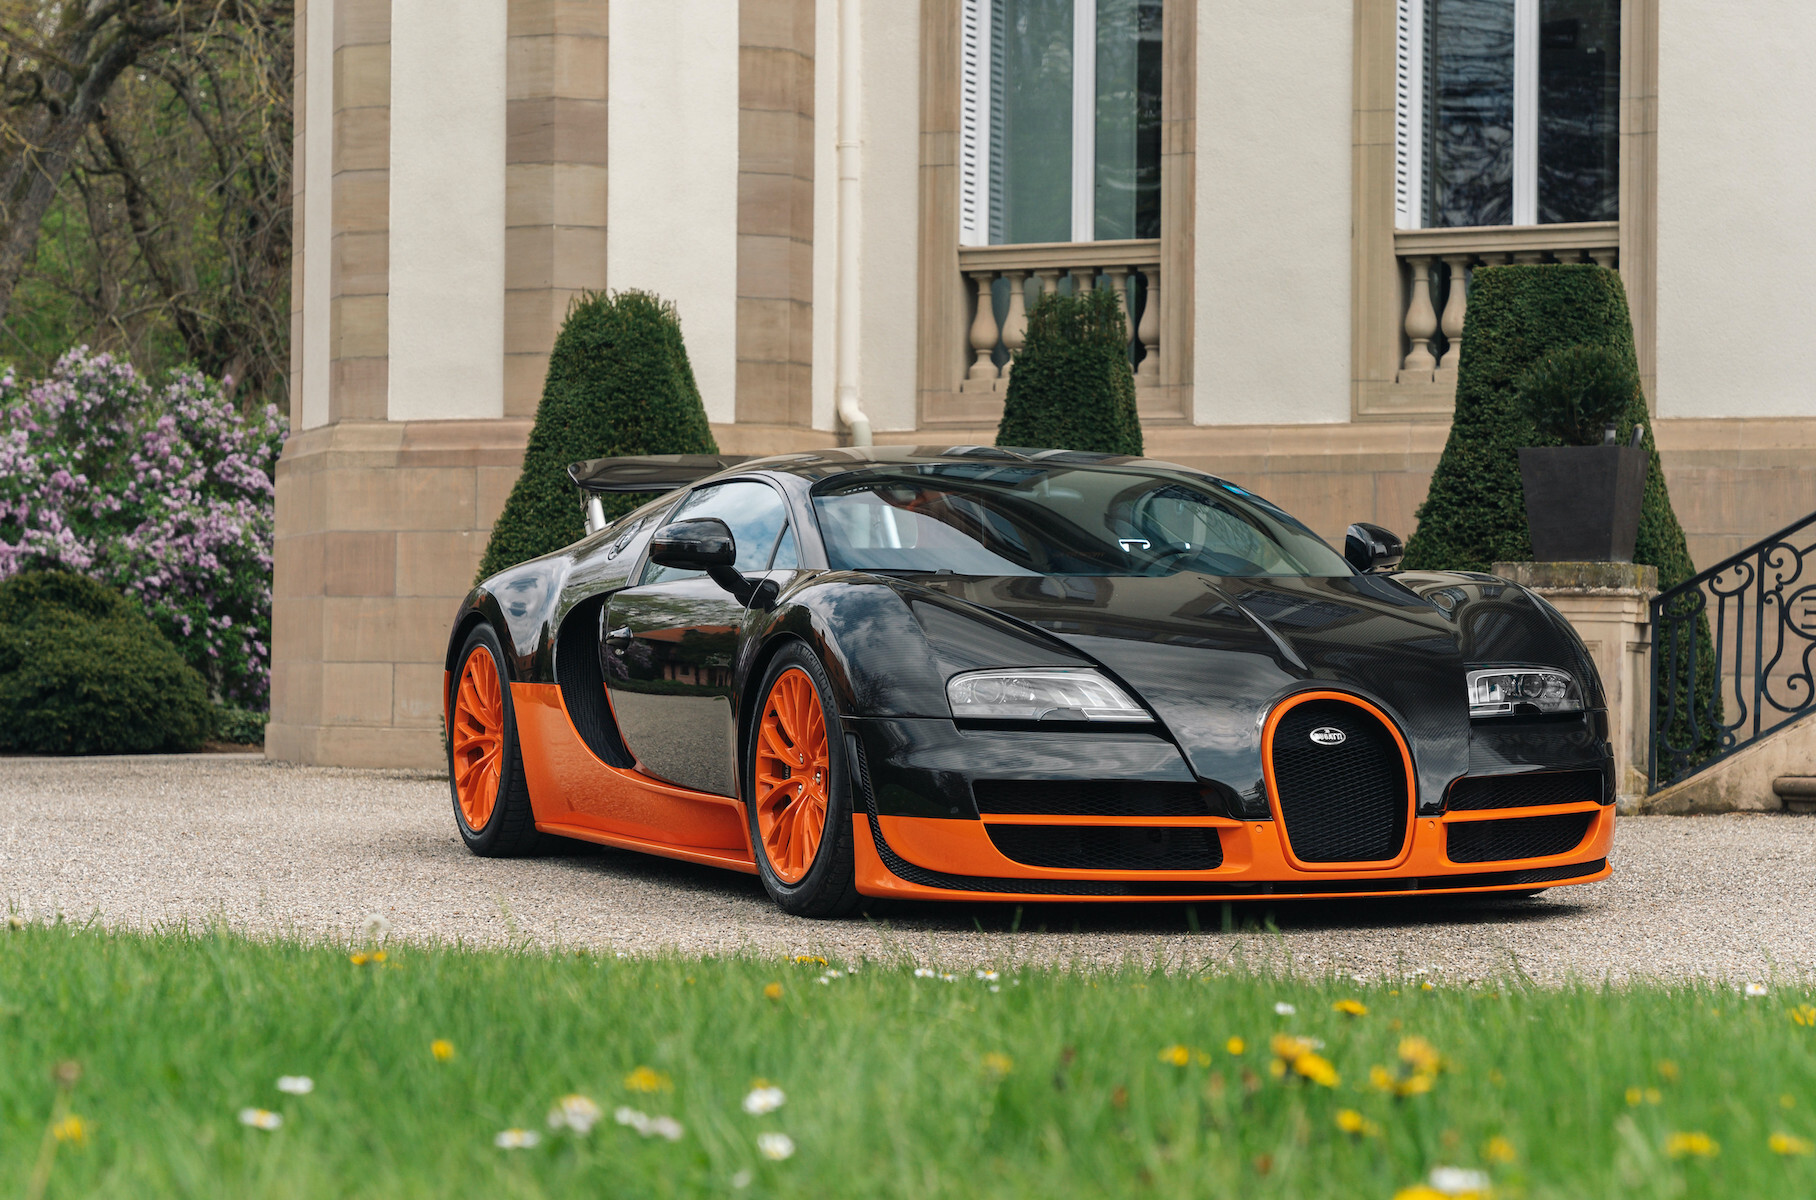 Bugatti Veyron 16.4 Super Sport, установил мировой рекорд скорости в 2010 году, разогнавшись до 431.07 км/ч